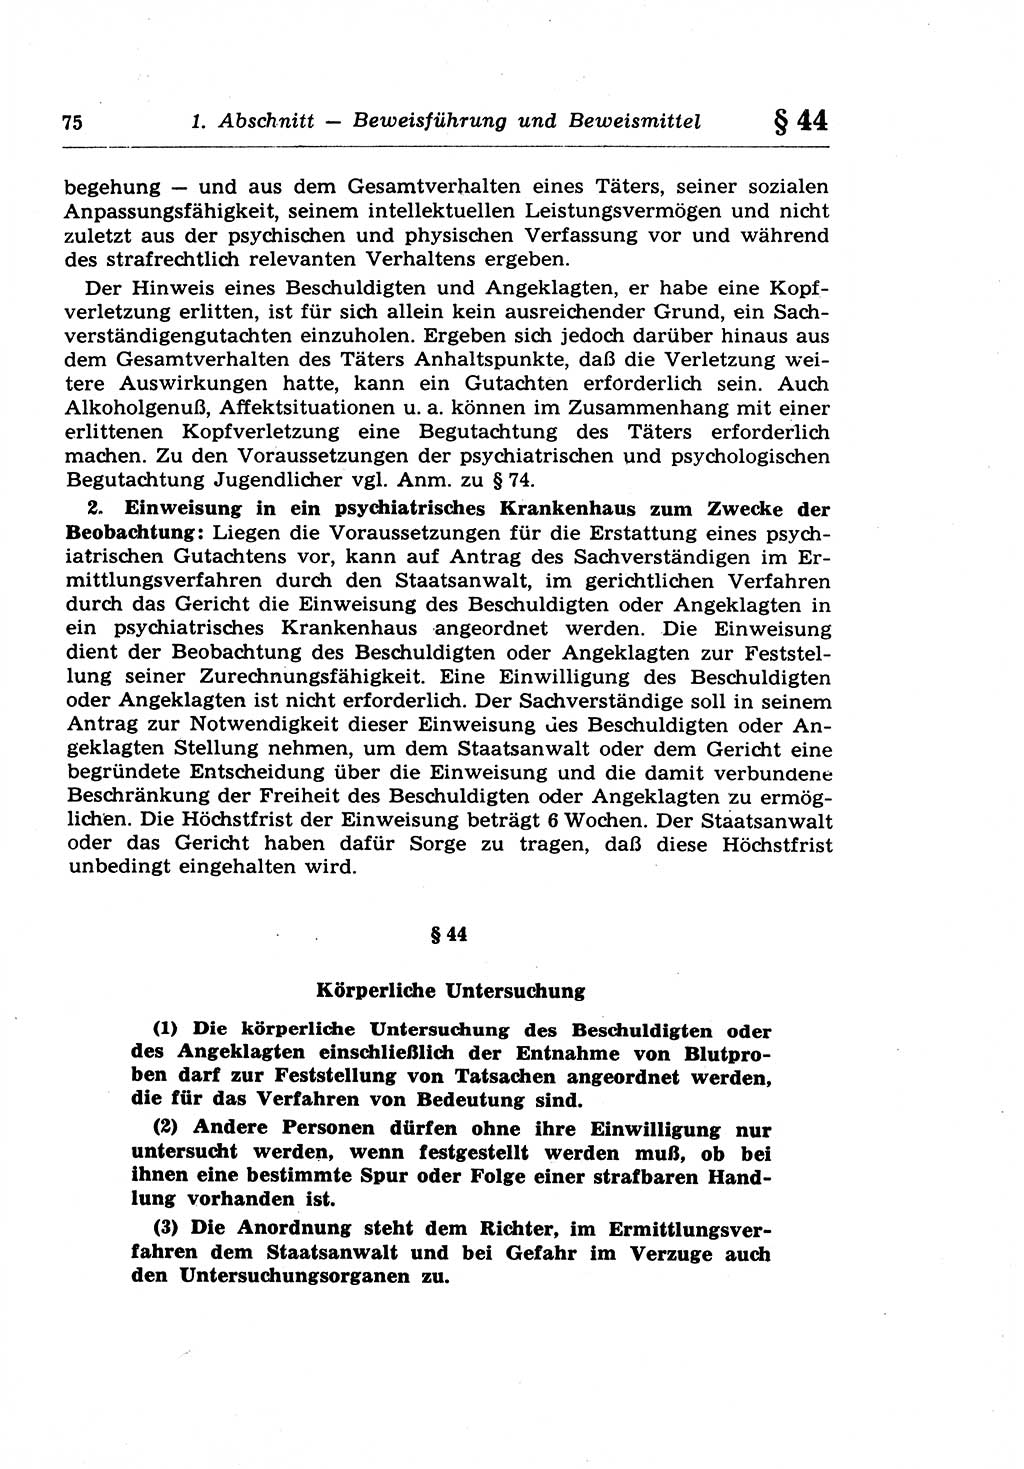 Strafprozeßrecht der DDR (Deutsche Demokratische Republik), Lehrkommentar zur Strafprozeßordnung (StPO) 1968, Seite 75 (Strafprozeßr. DDR Lehrkomm. StPO 19688, S. 75)